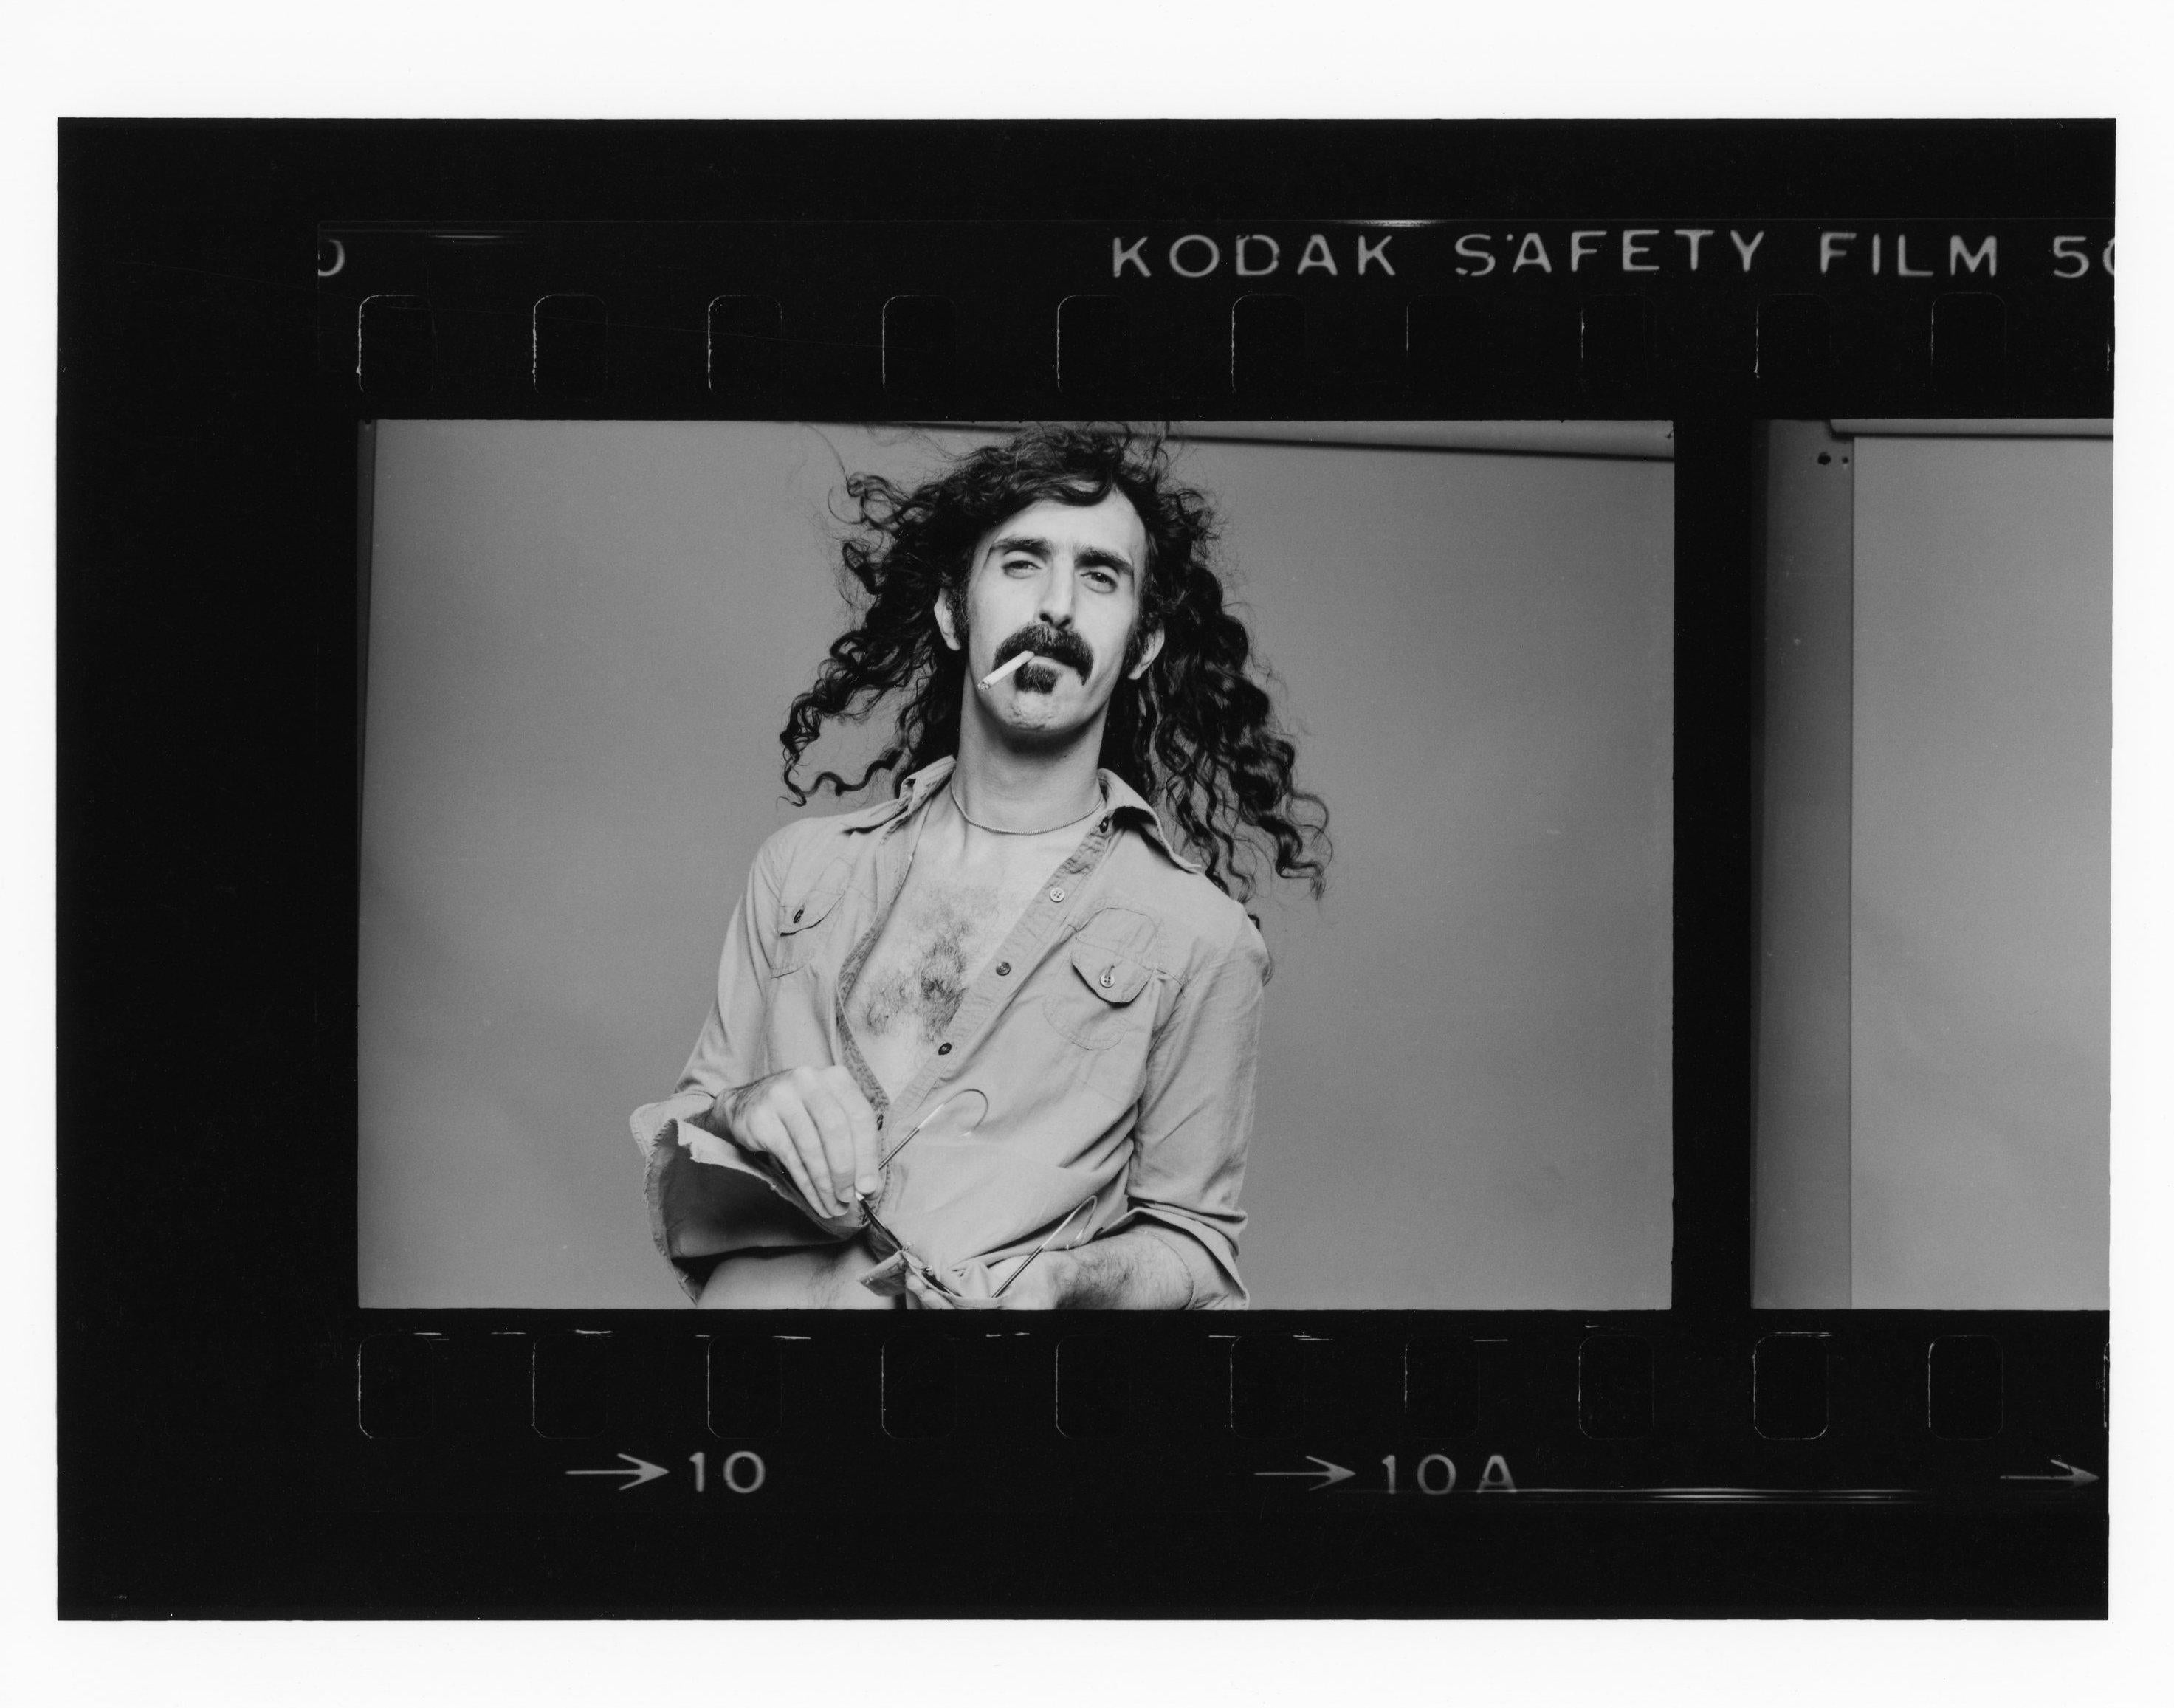 Original Vintage 8x10" Arbeitsdruck von Norman Seeff von Frank Zappa. Handgedruckt zum Zeitpunkt des Fotoshootings, auf der Rückseite signiert von Norman Seeff

In ausgezeichnetem Zustand, da er flach in einem klimatisierten Raum gelagert